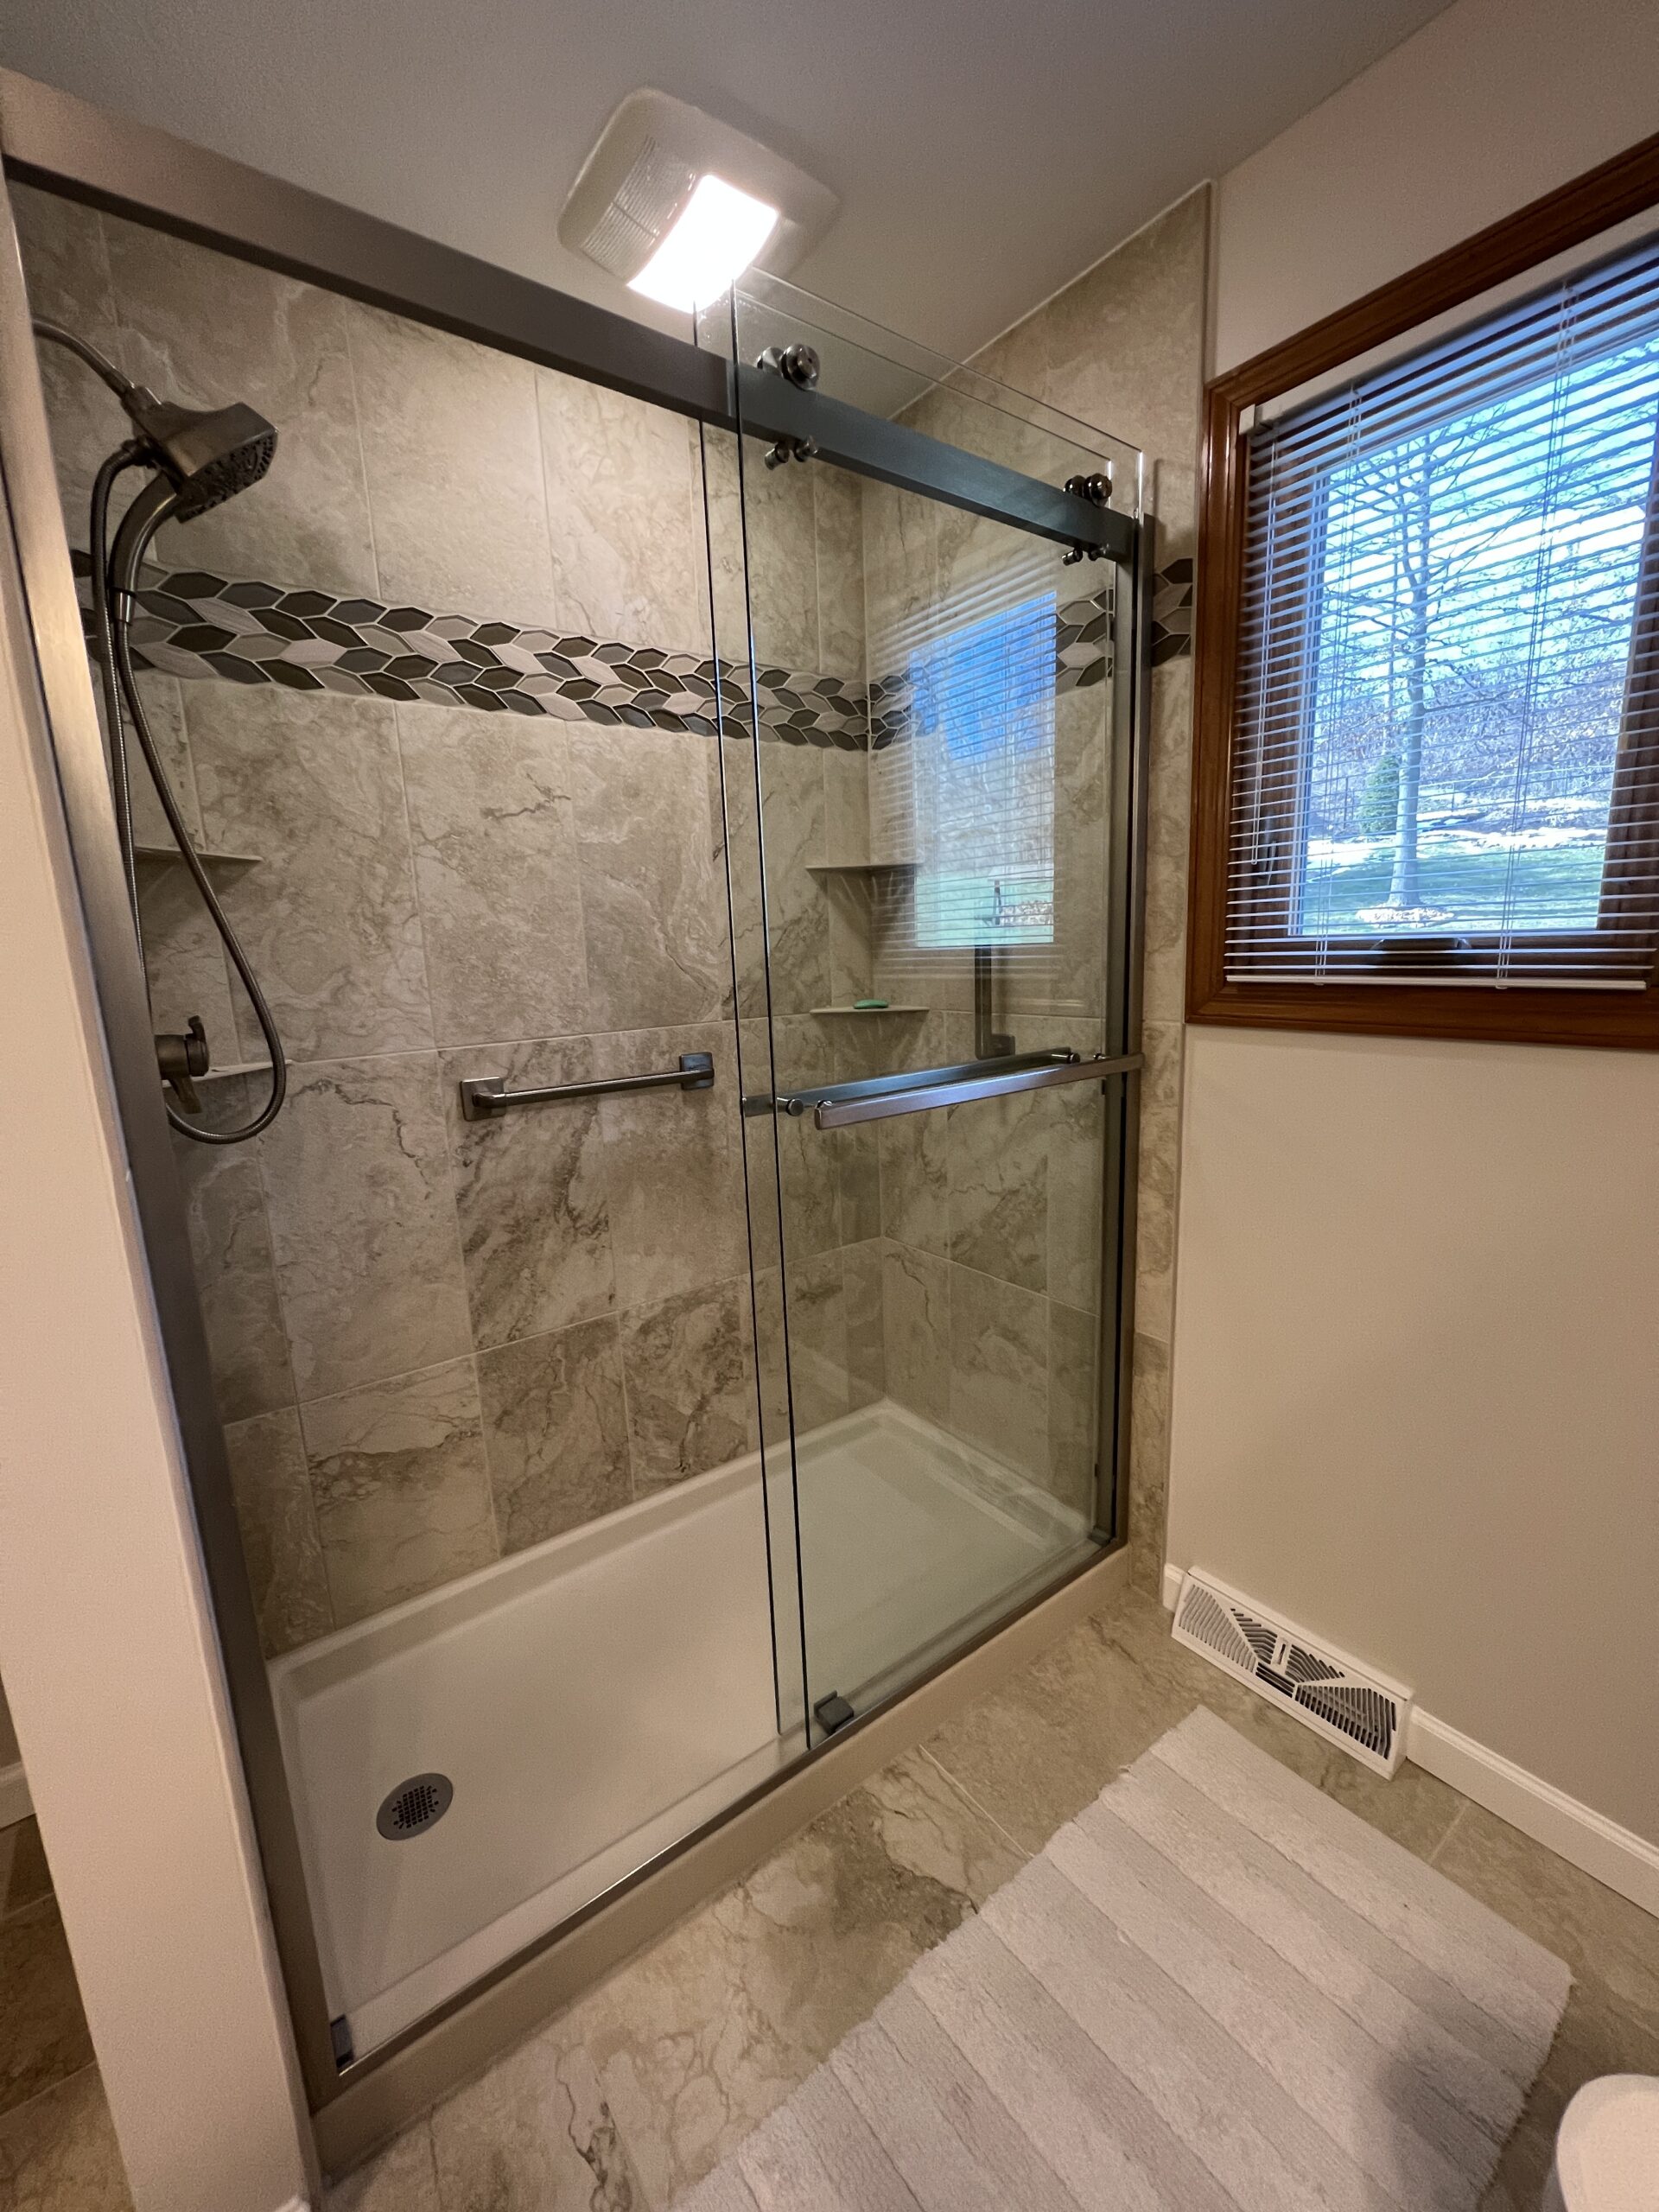  |  Weave Tile Bathroom Shower side